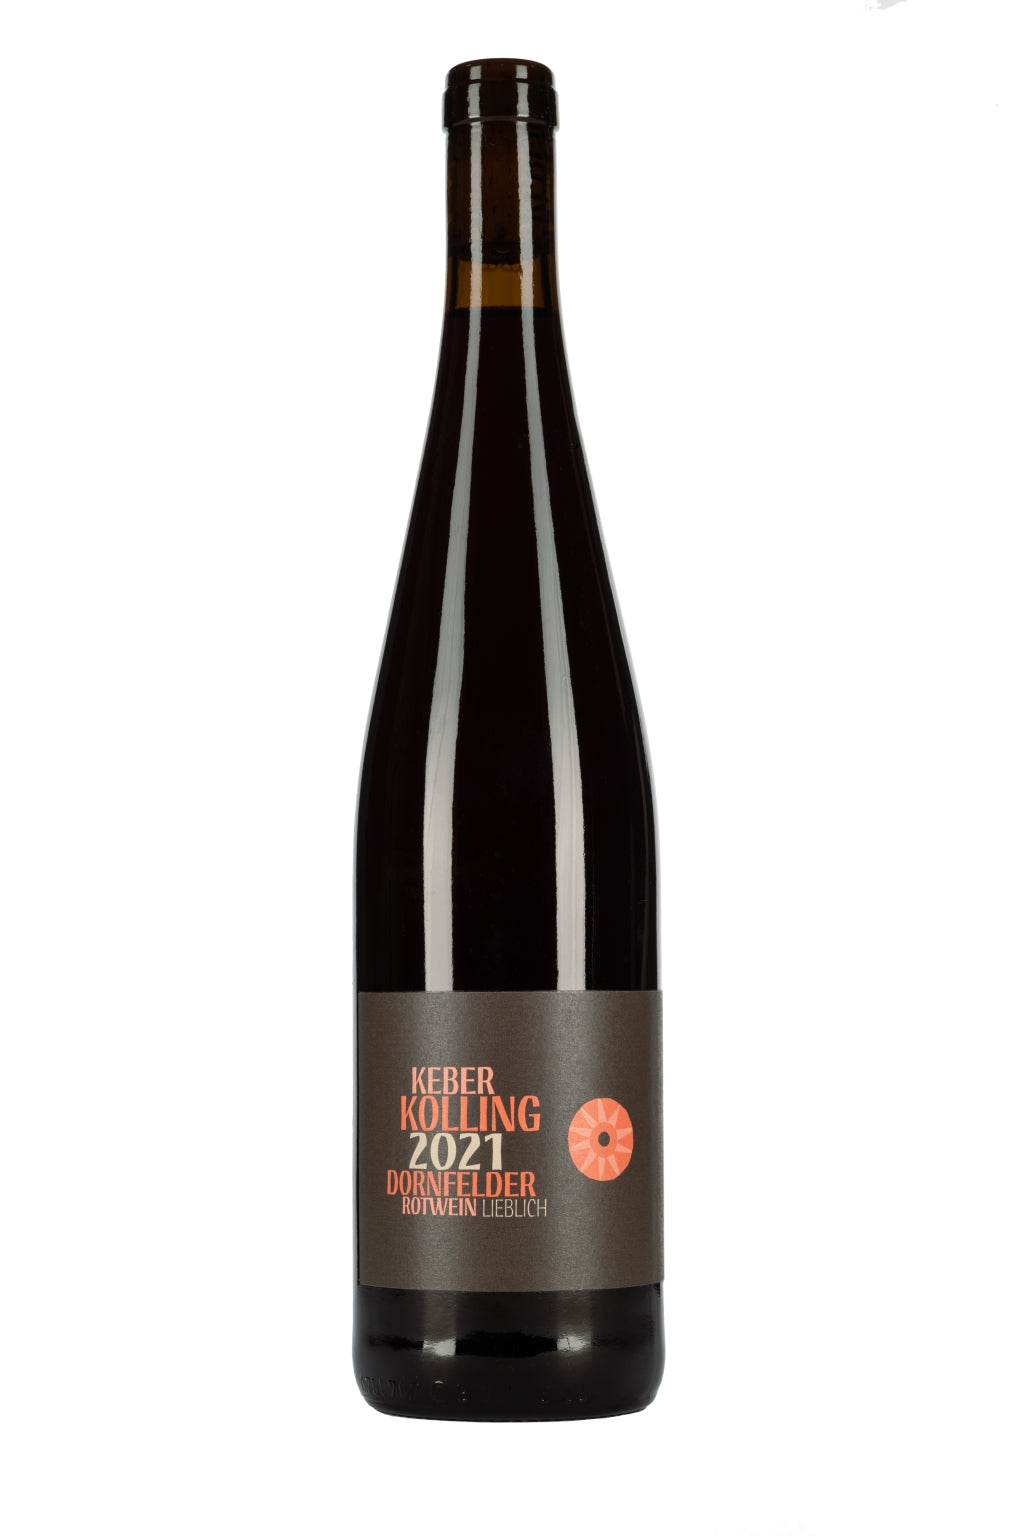 2021er Dornfelder Rotwein Kolling – Weingut Keber lieblich